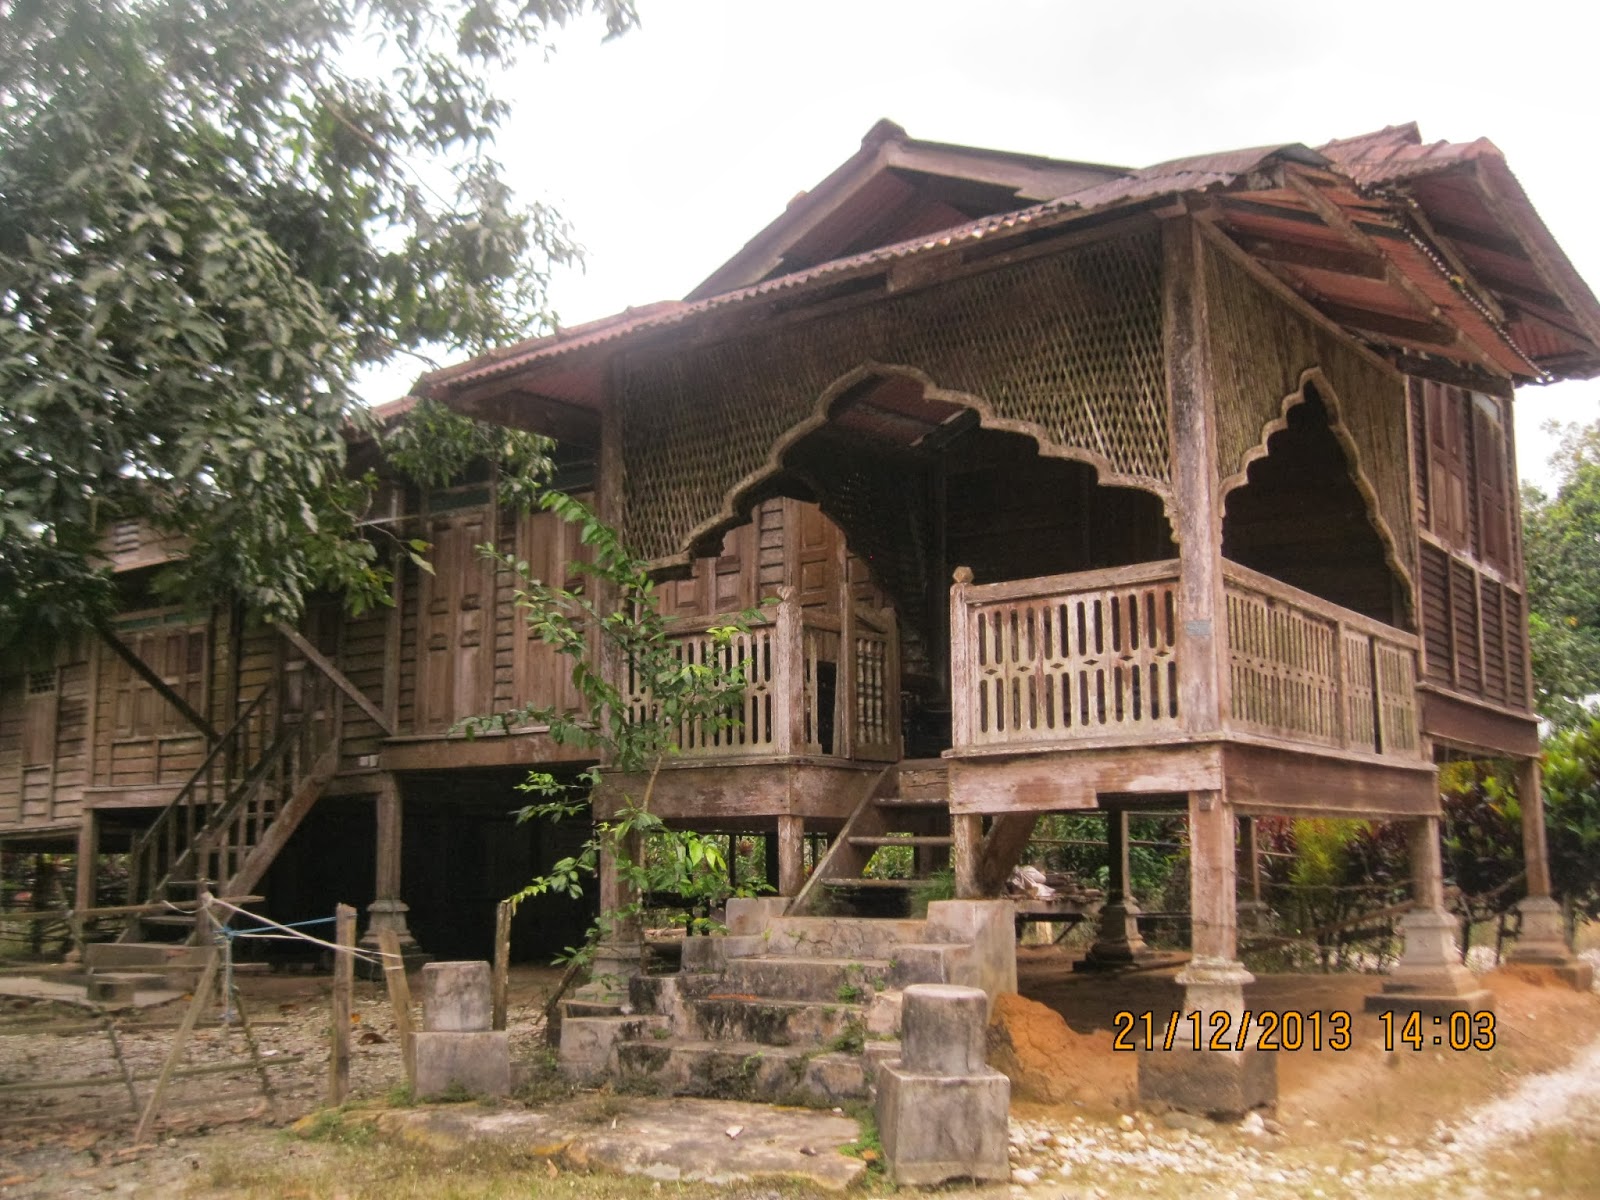  Rumah  Kampung  Lama Desainrumahid com